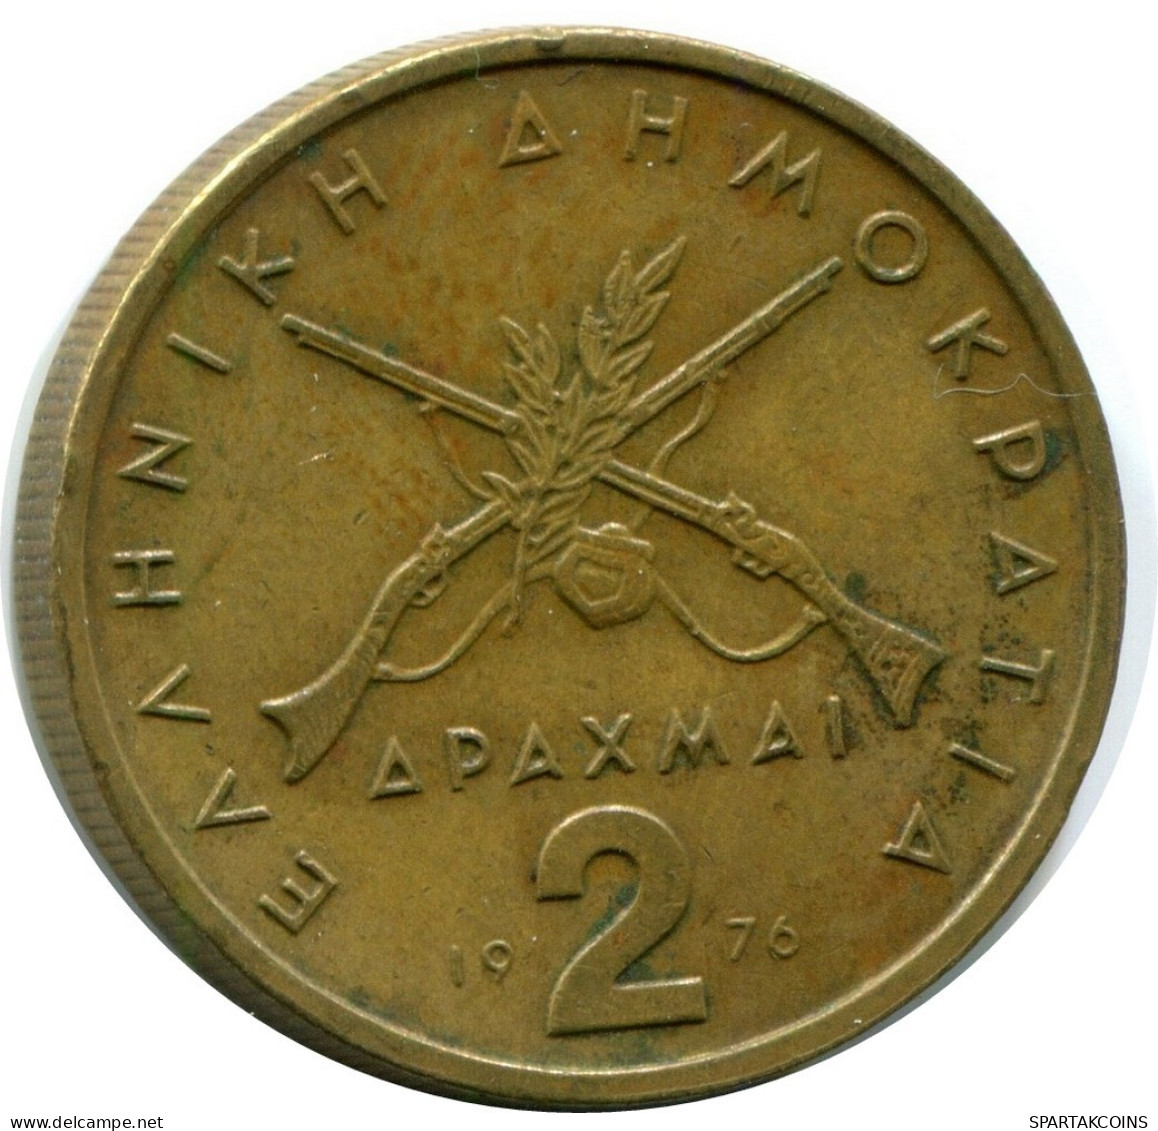 2 DRACHMES 1976 GREECE Coin #AX109.U.A - Grèce